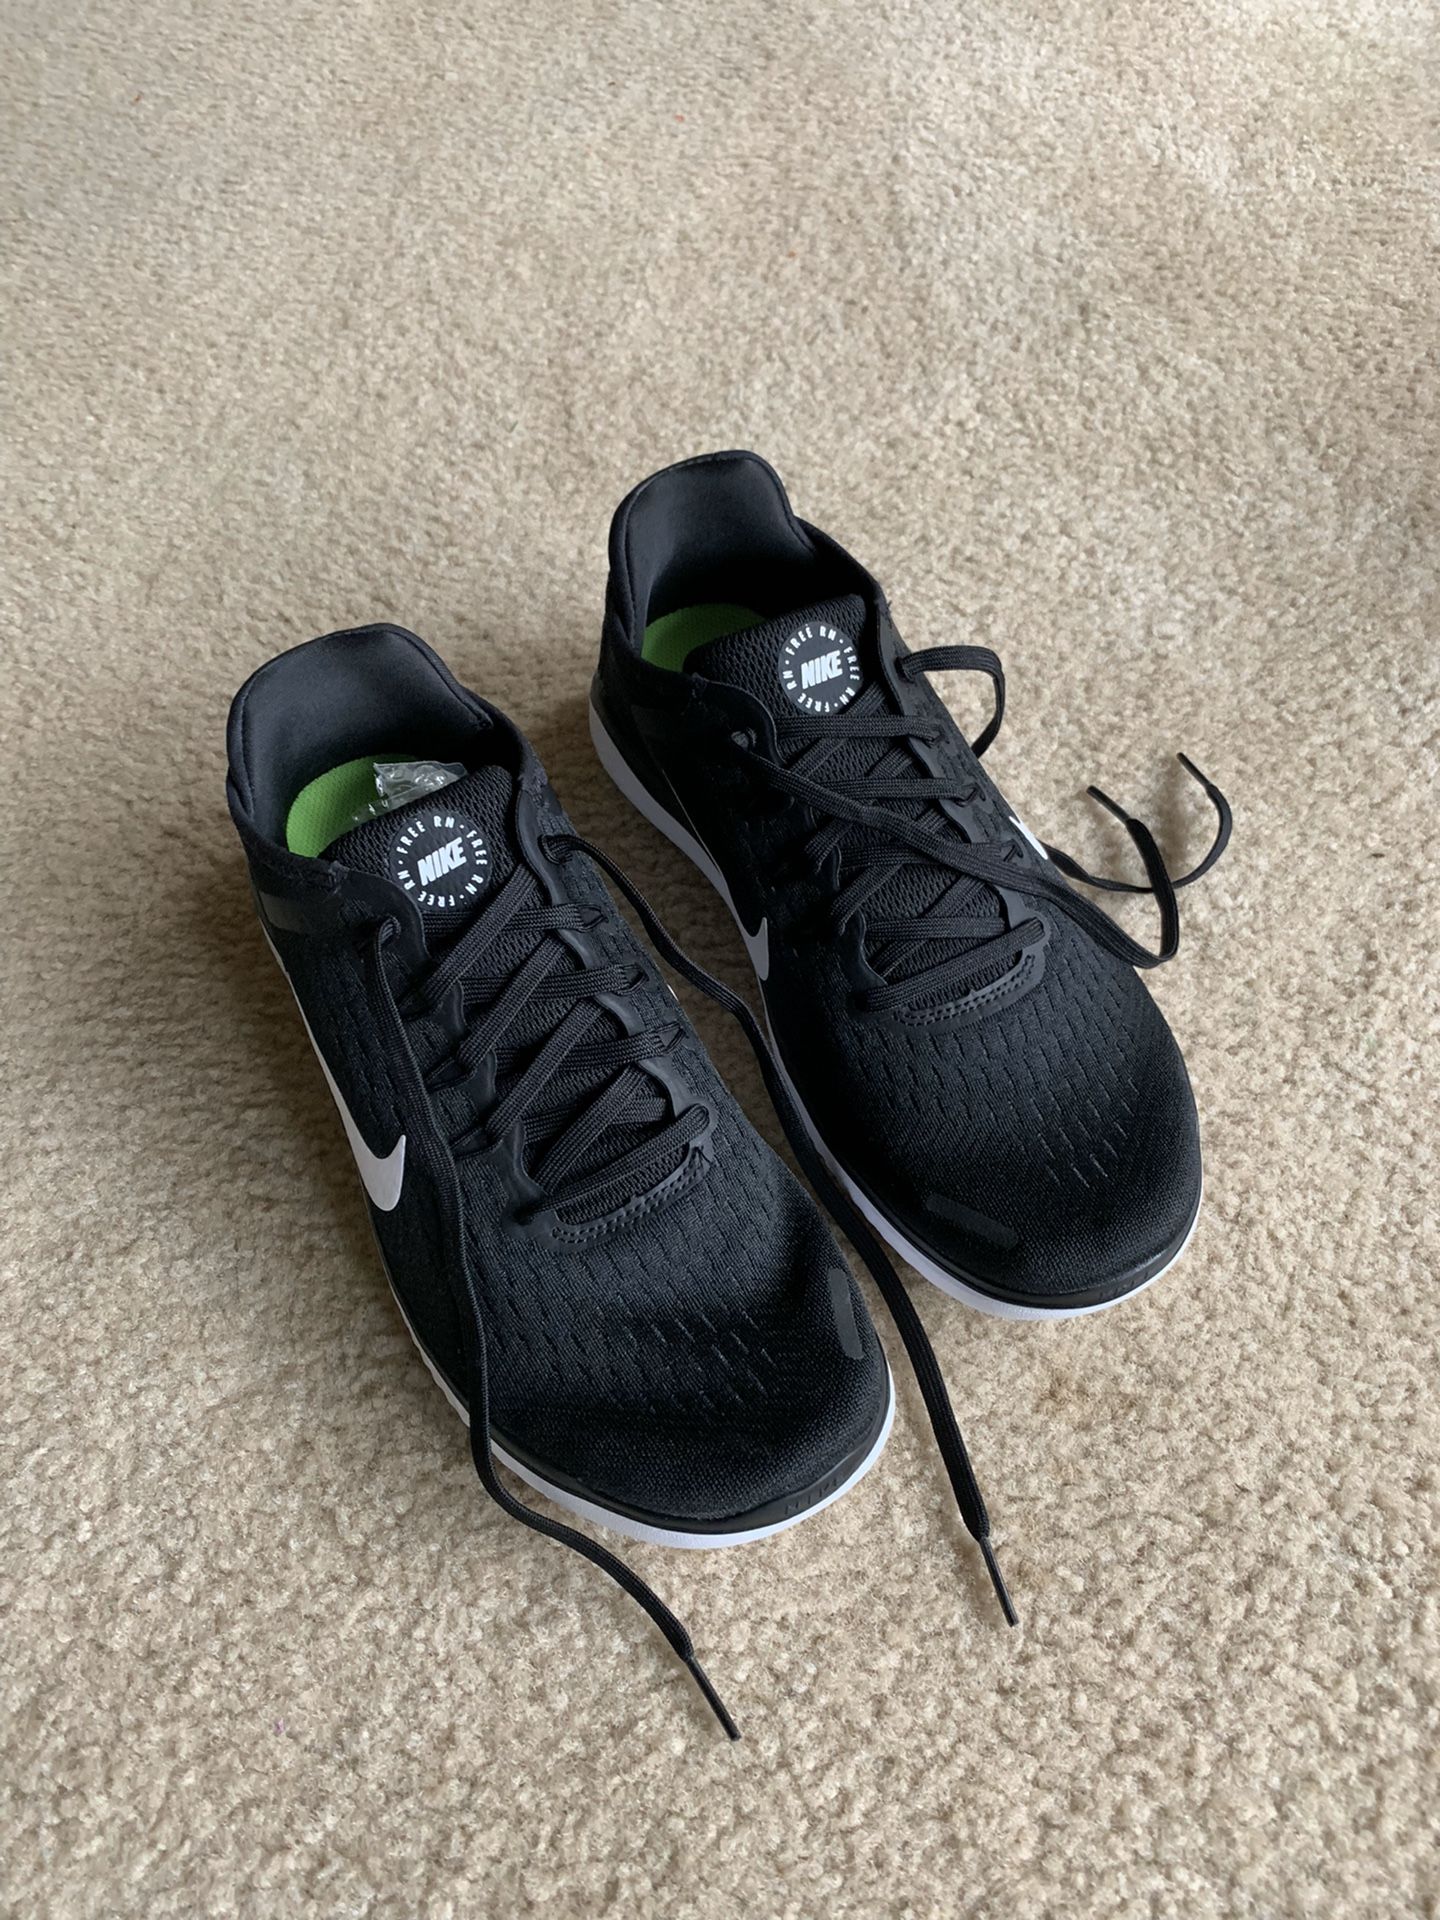 Nike Free RN 2018 men’s running shoes